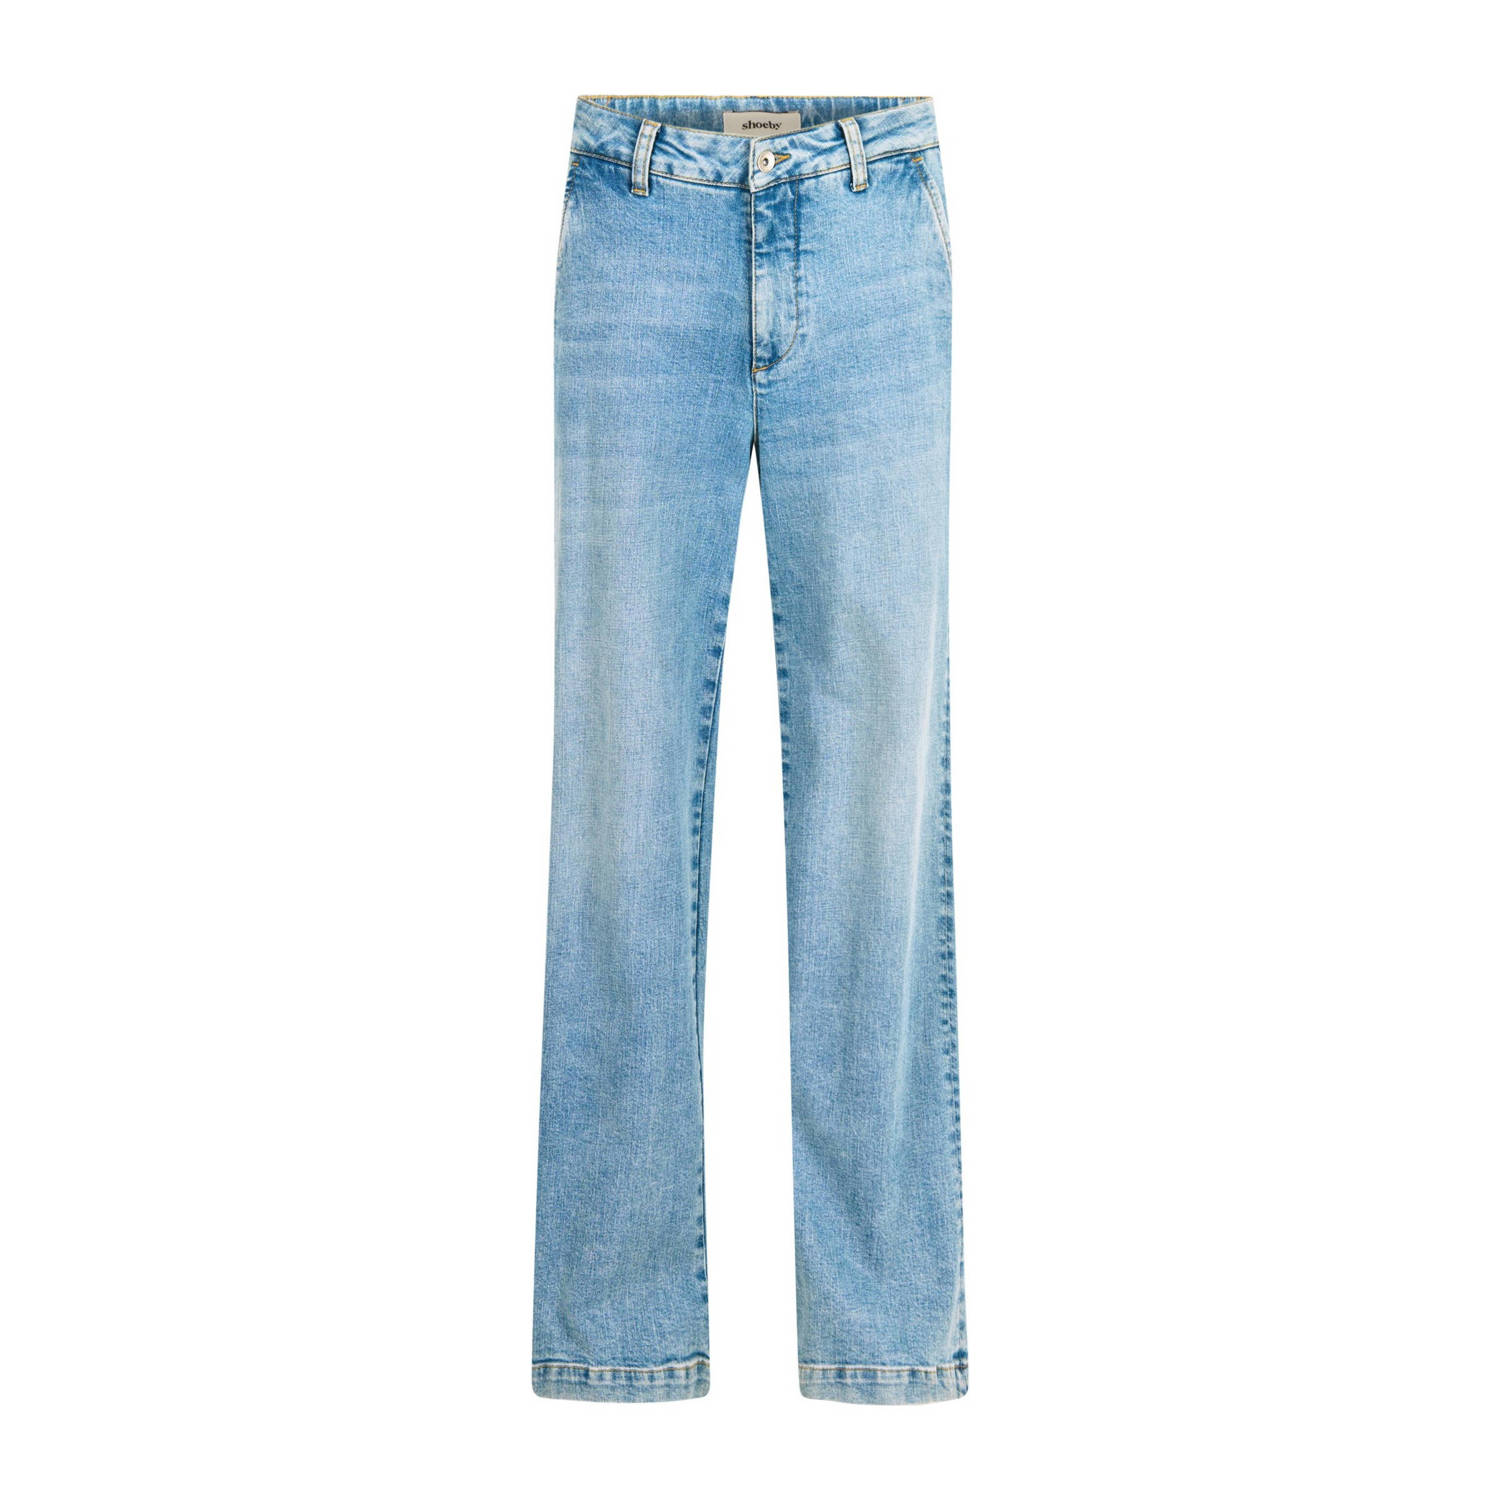 Shoeby high waist wide leg jeans light blue denim